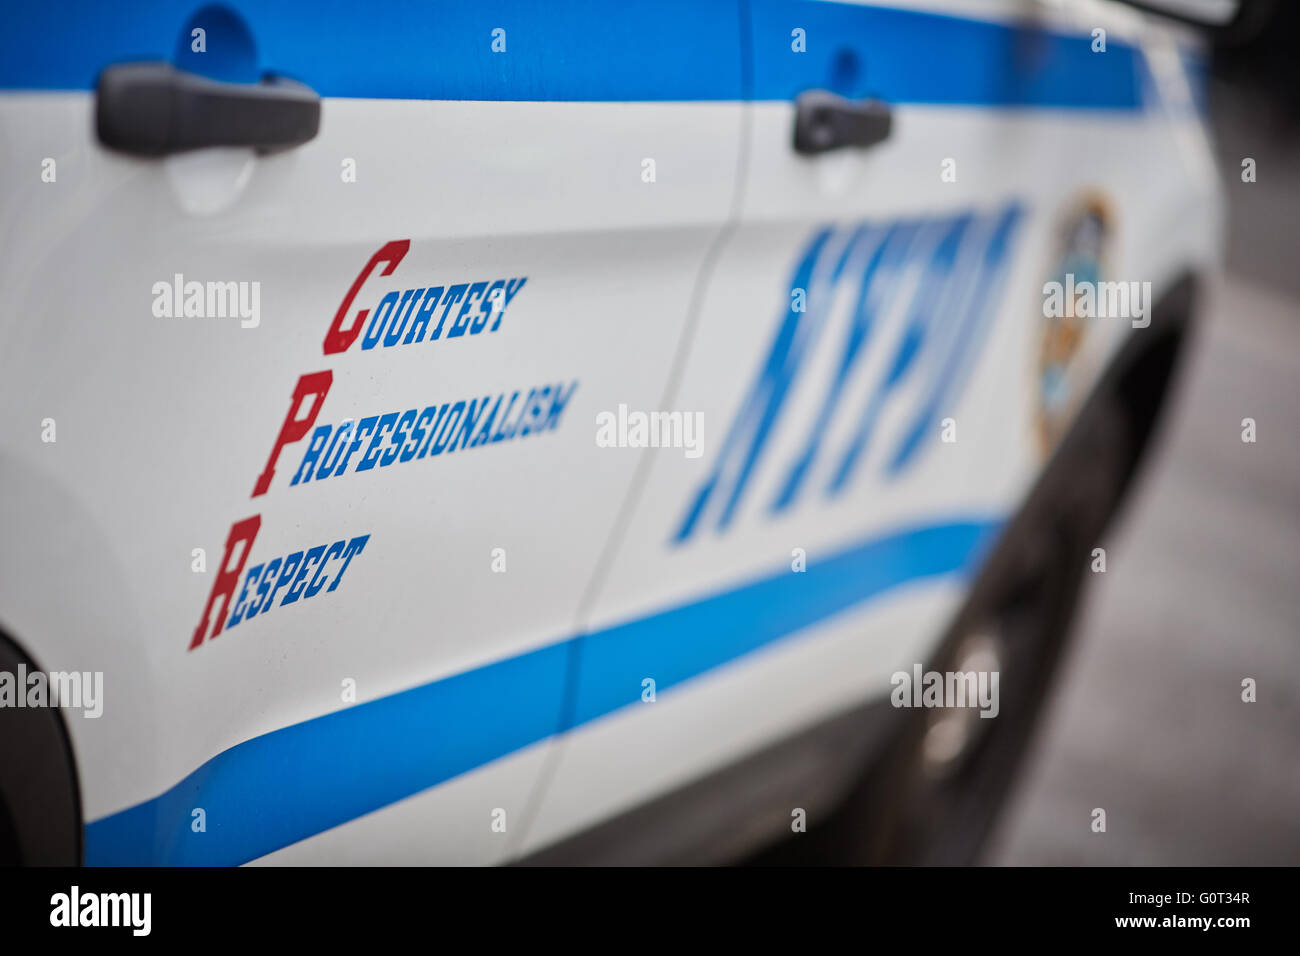 New York Times Square broadway NYPD cortese professionalità rispetto auto suv close up blu bianco funzionario di polizia pcso p.c.s.o. Foto Stock